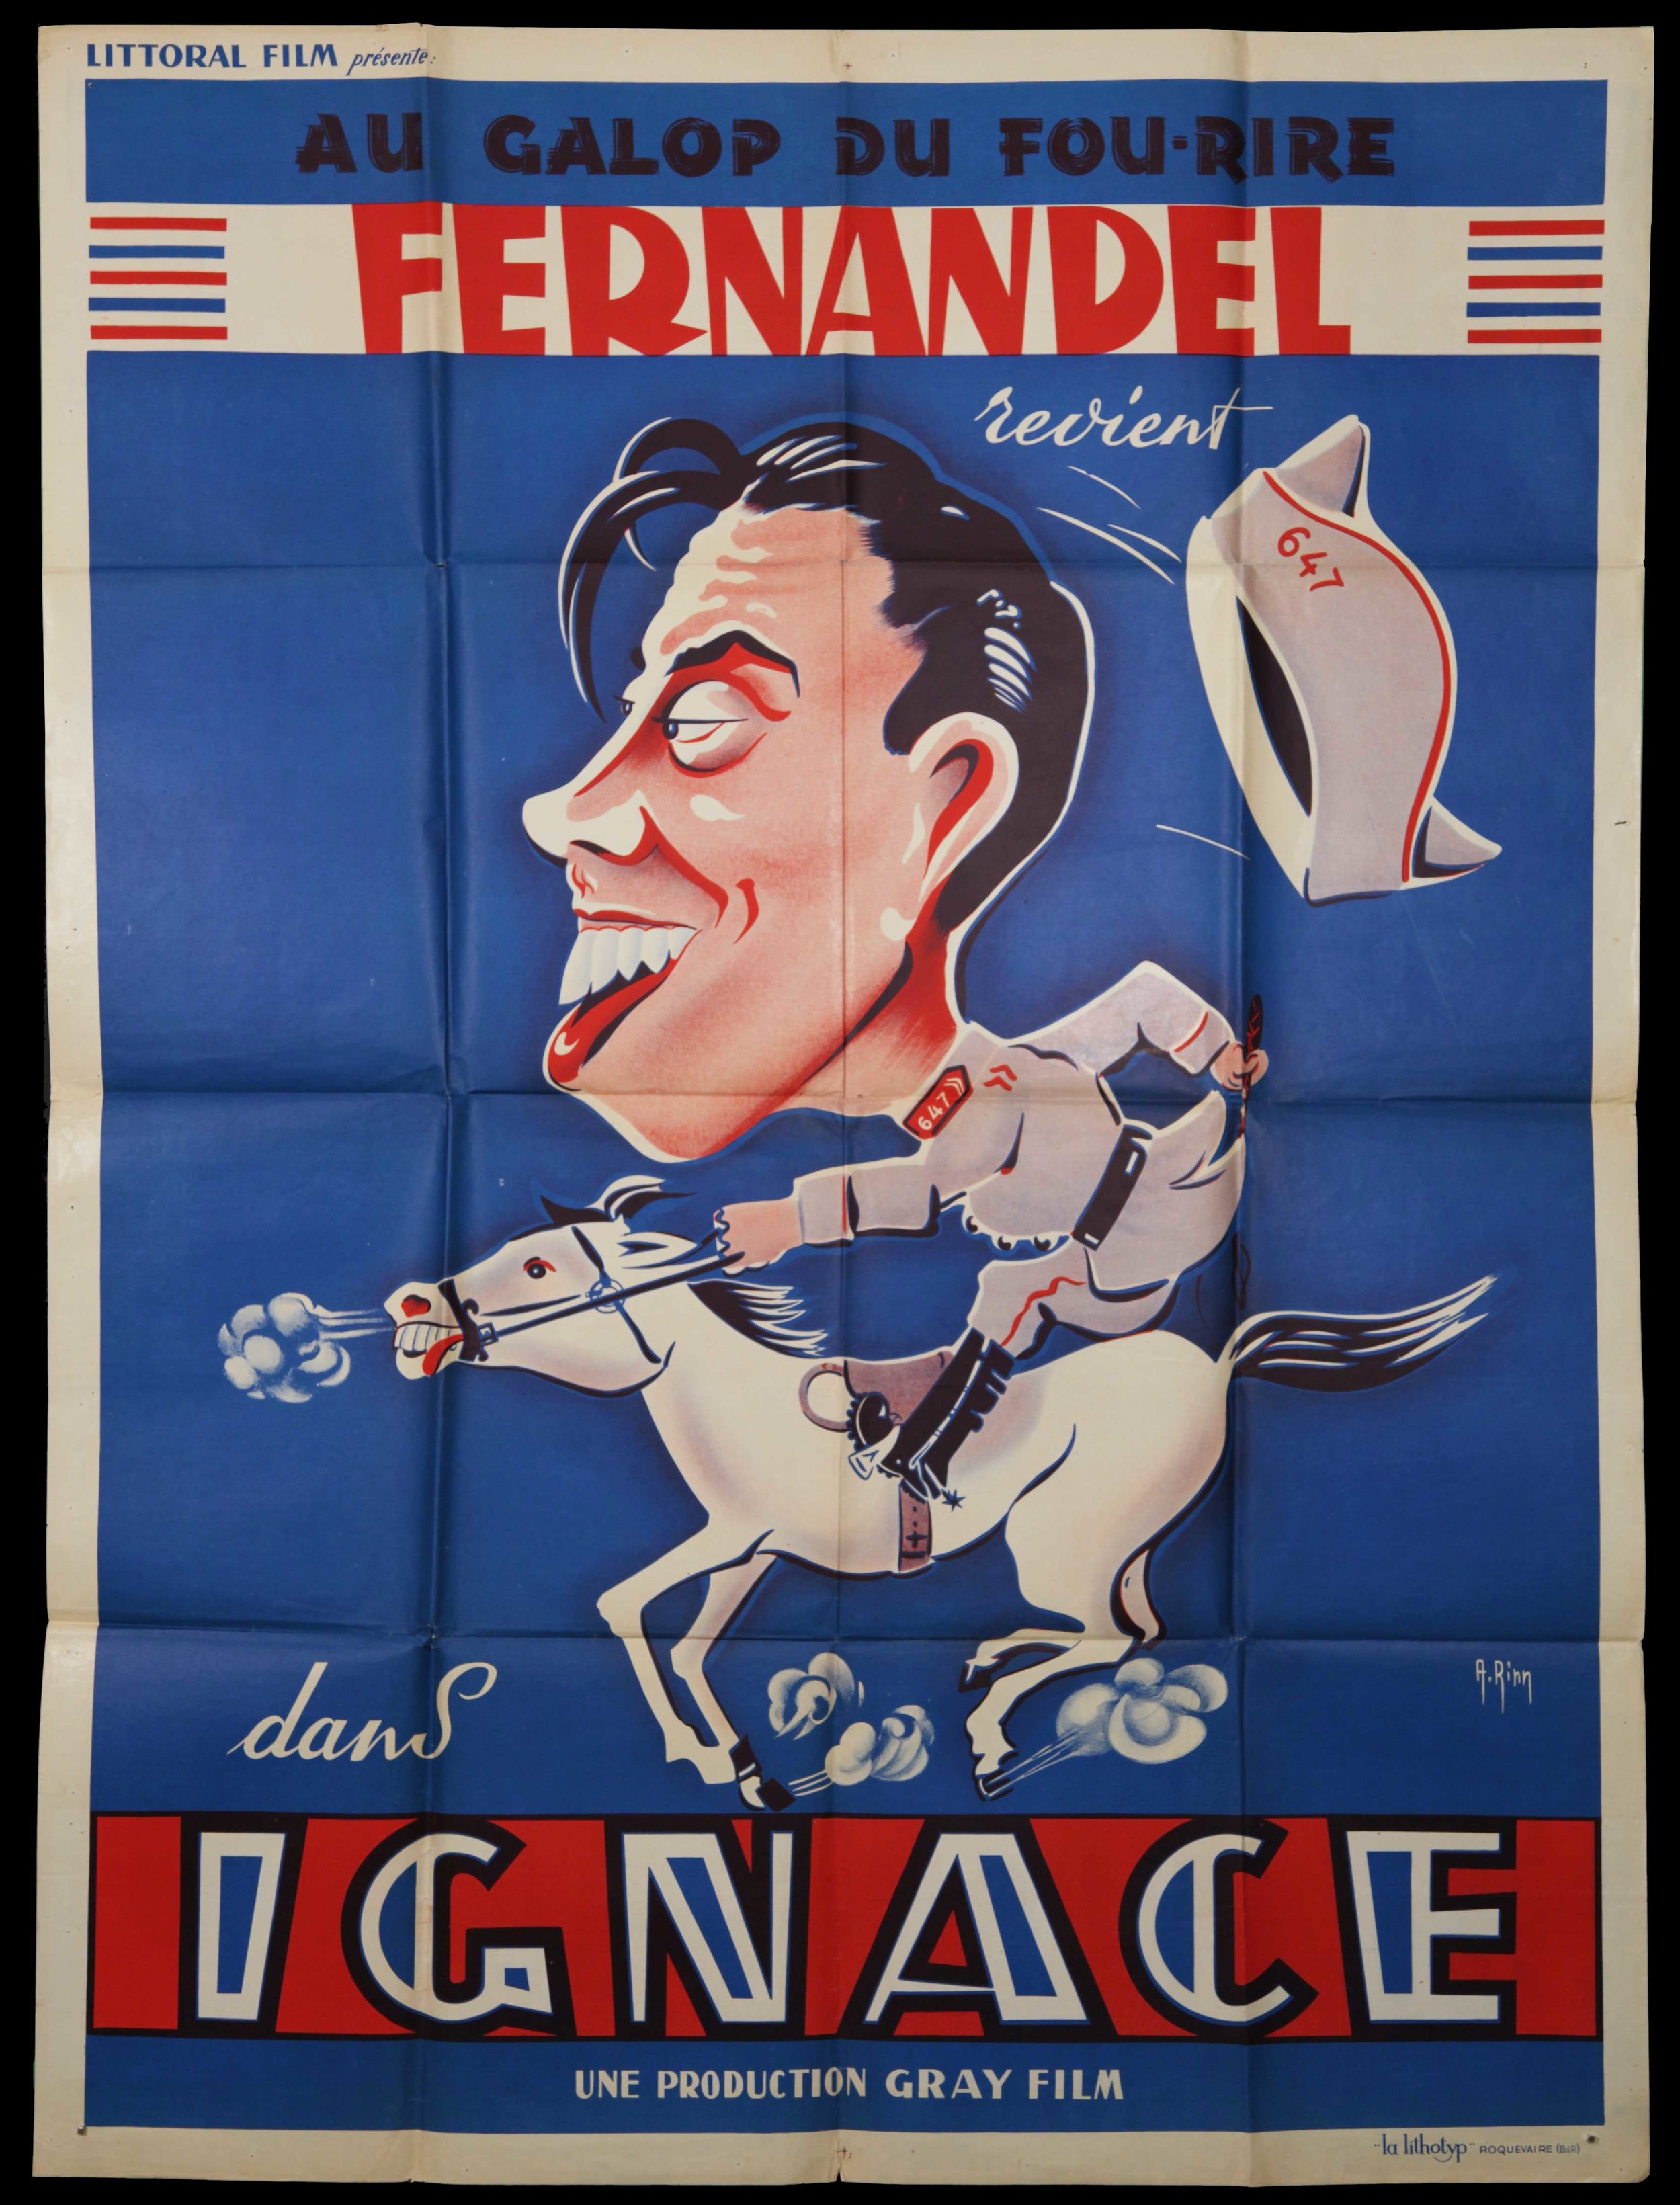 Fernandel in "Ignace" (1934)